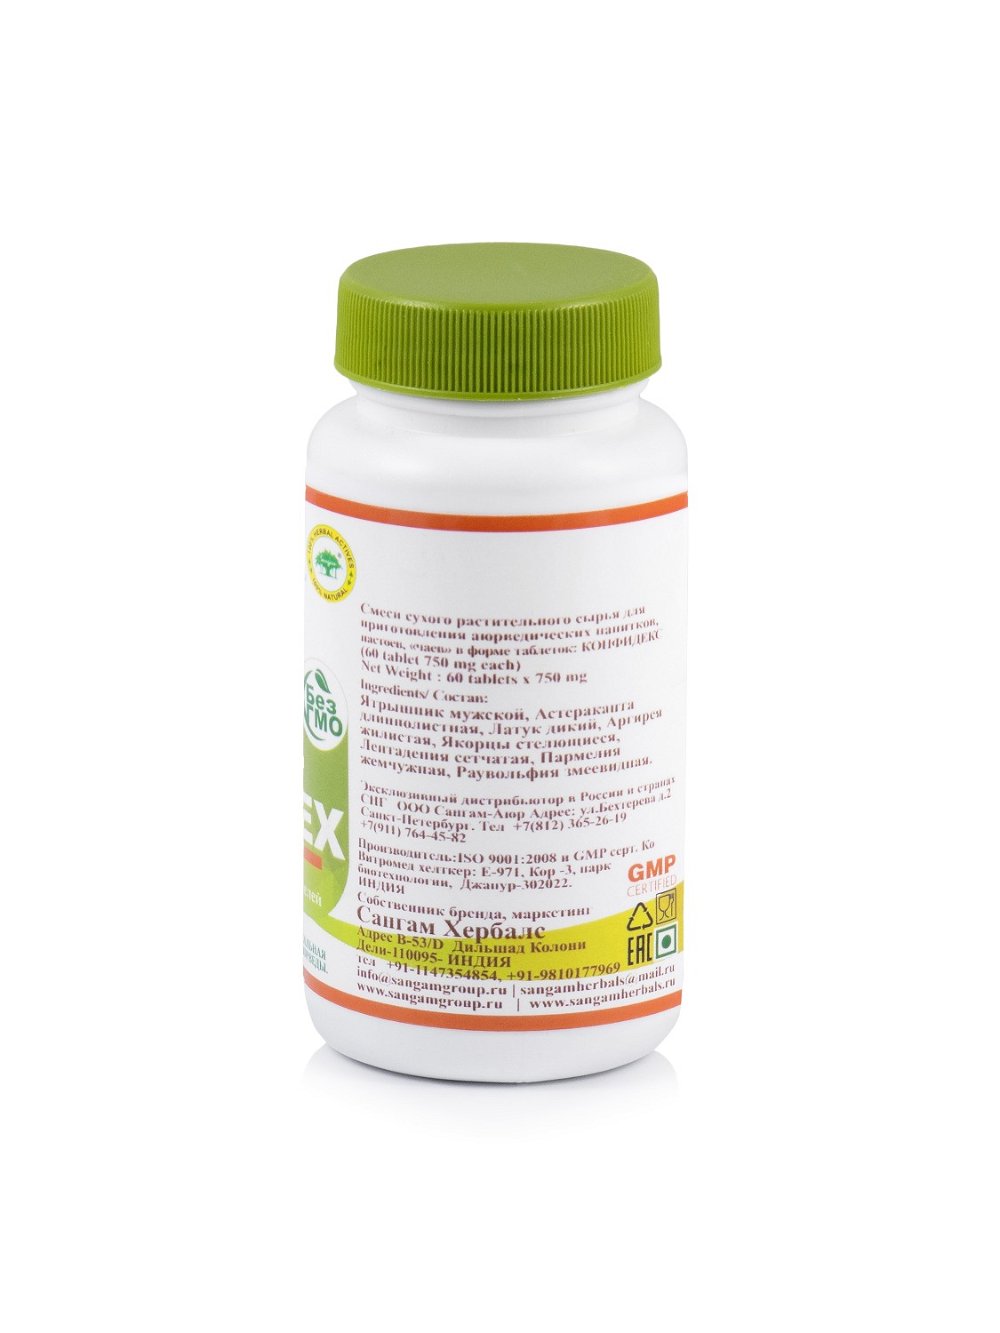 Таблетки Конфидекс Sangam Herbals (60 таблеток), Конфидекс Sangam Herbals